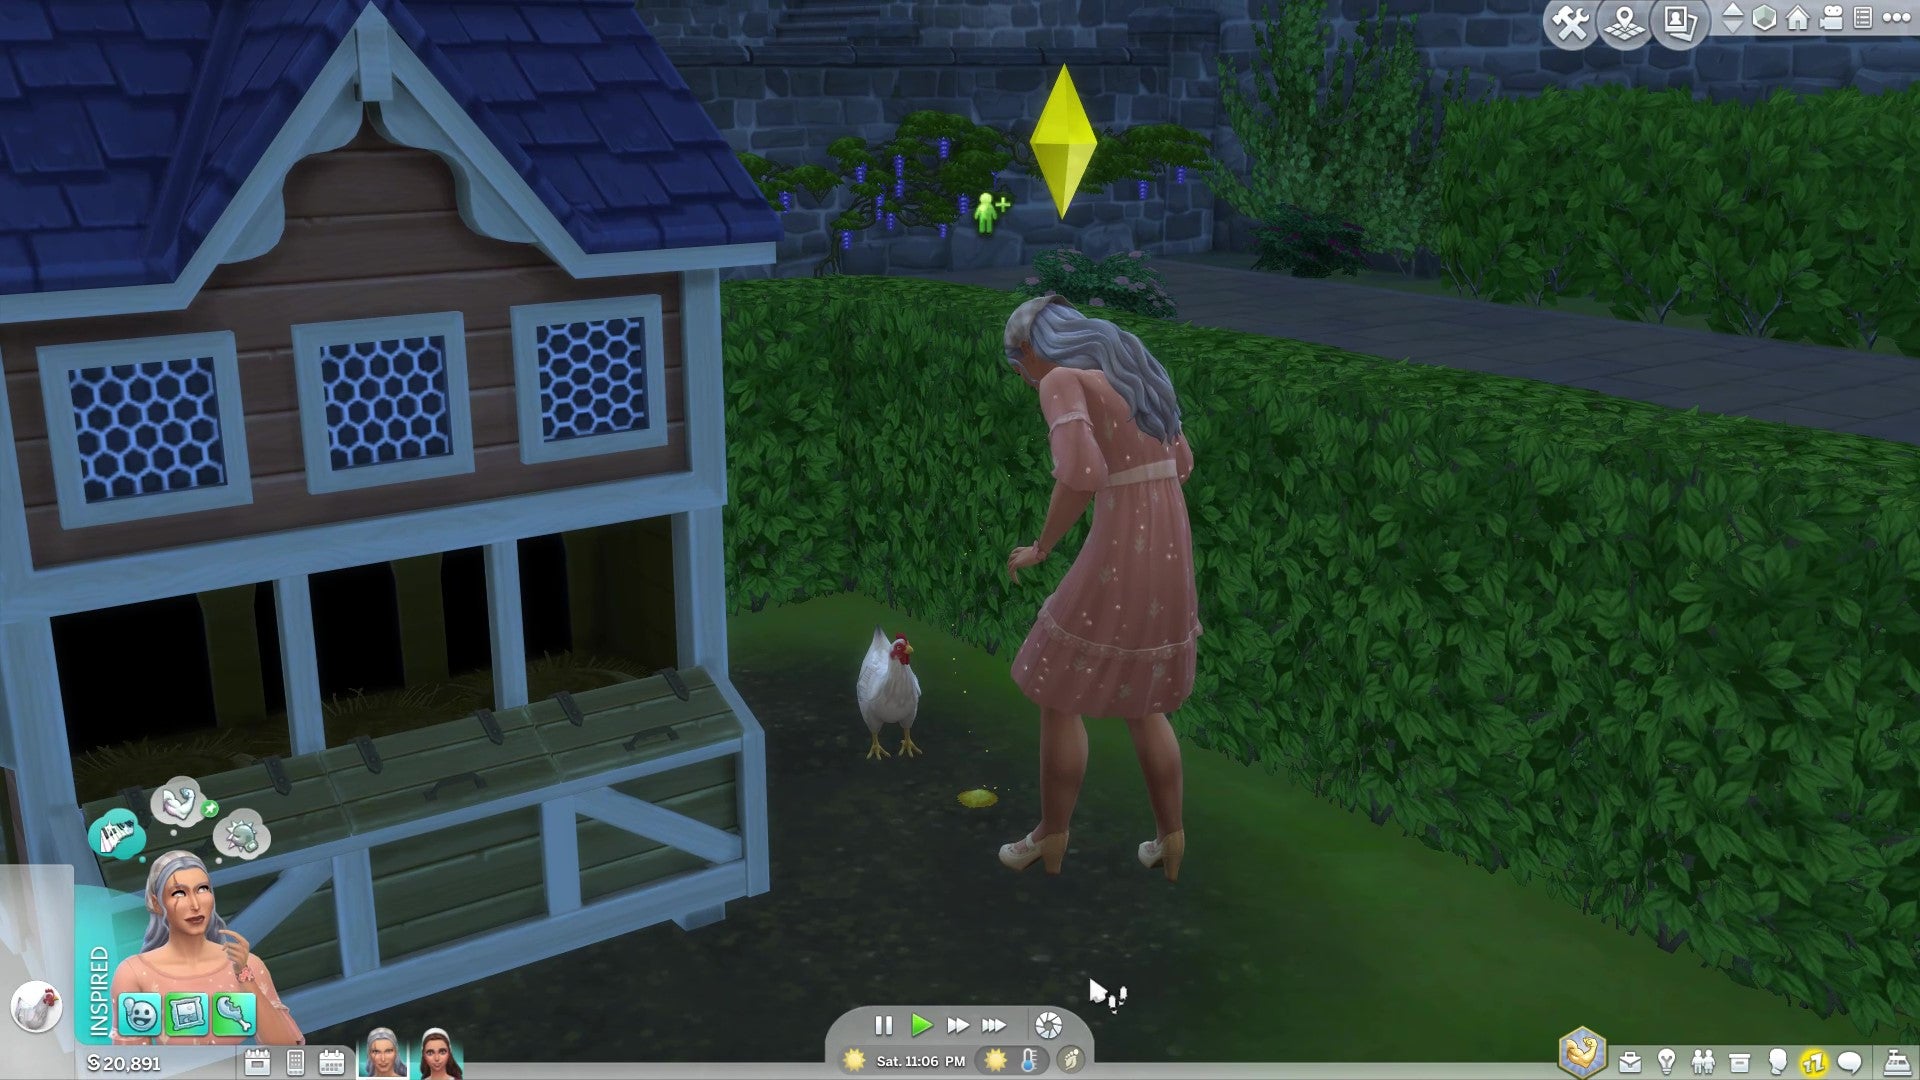 A Sim feeding a chicken an animal treat.